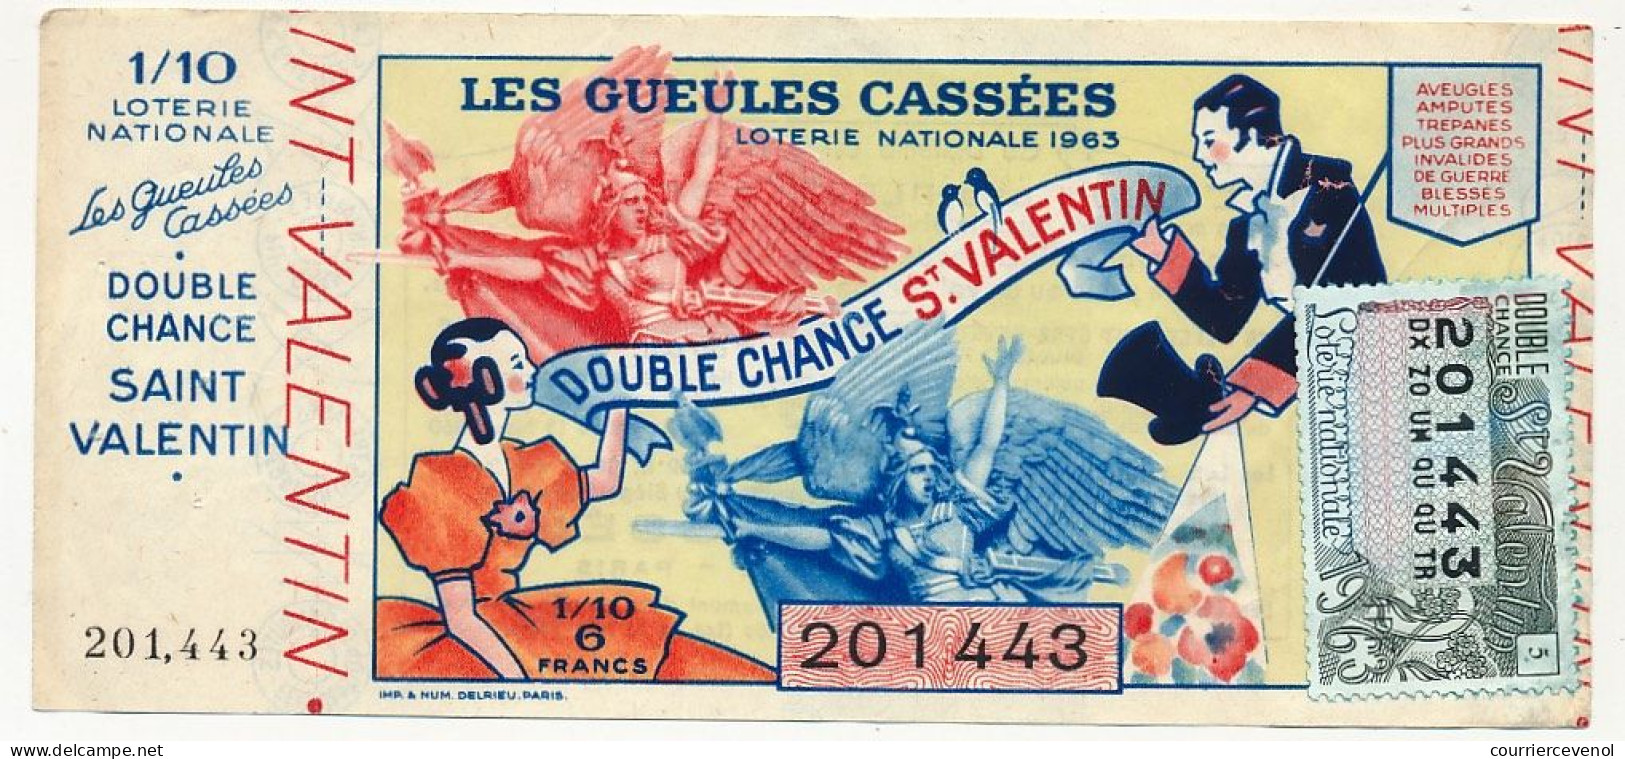 FRANCE - Loterie Nationale - Double Chance Saint Valentin - Gueules Cassées - 1/10ème 1963 - Lotterielose